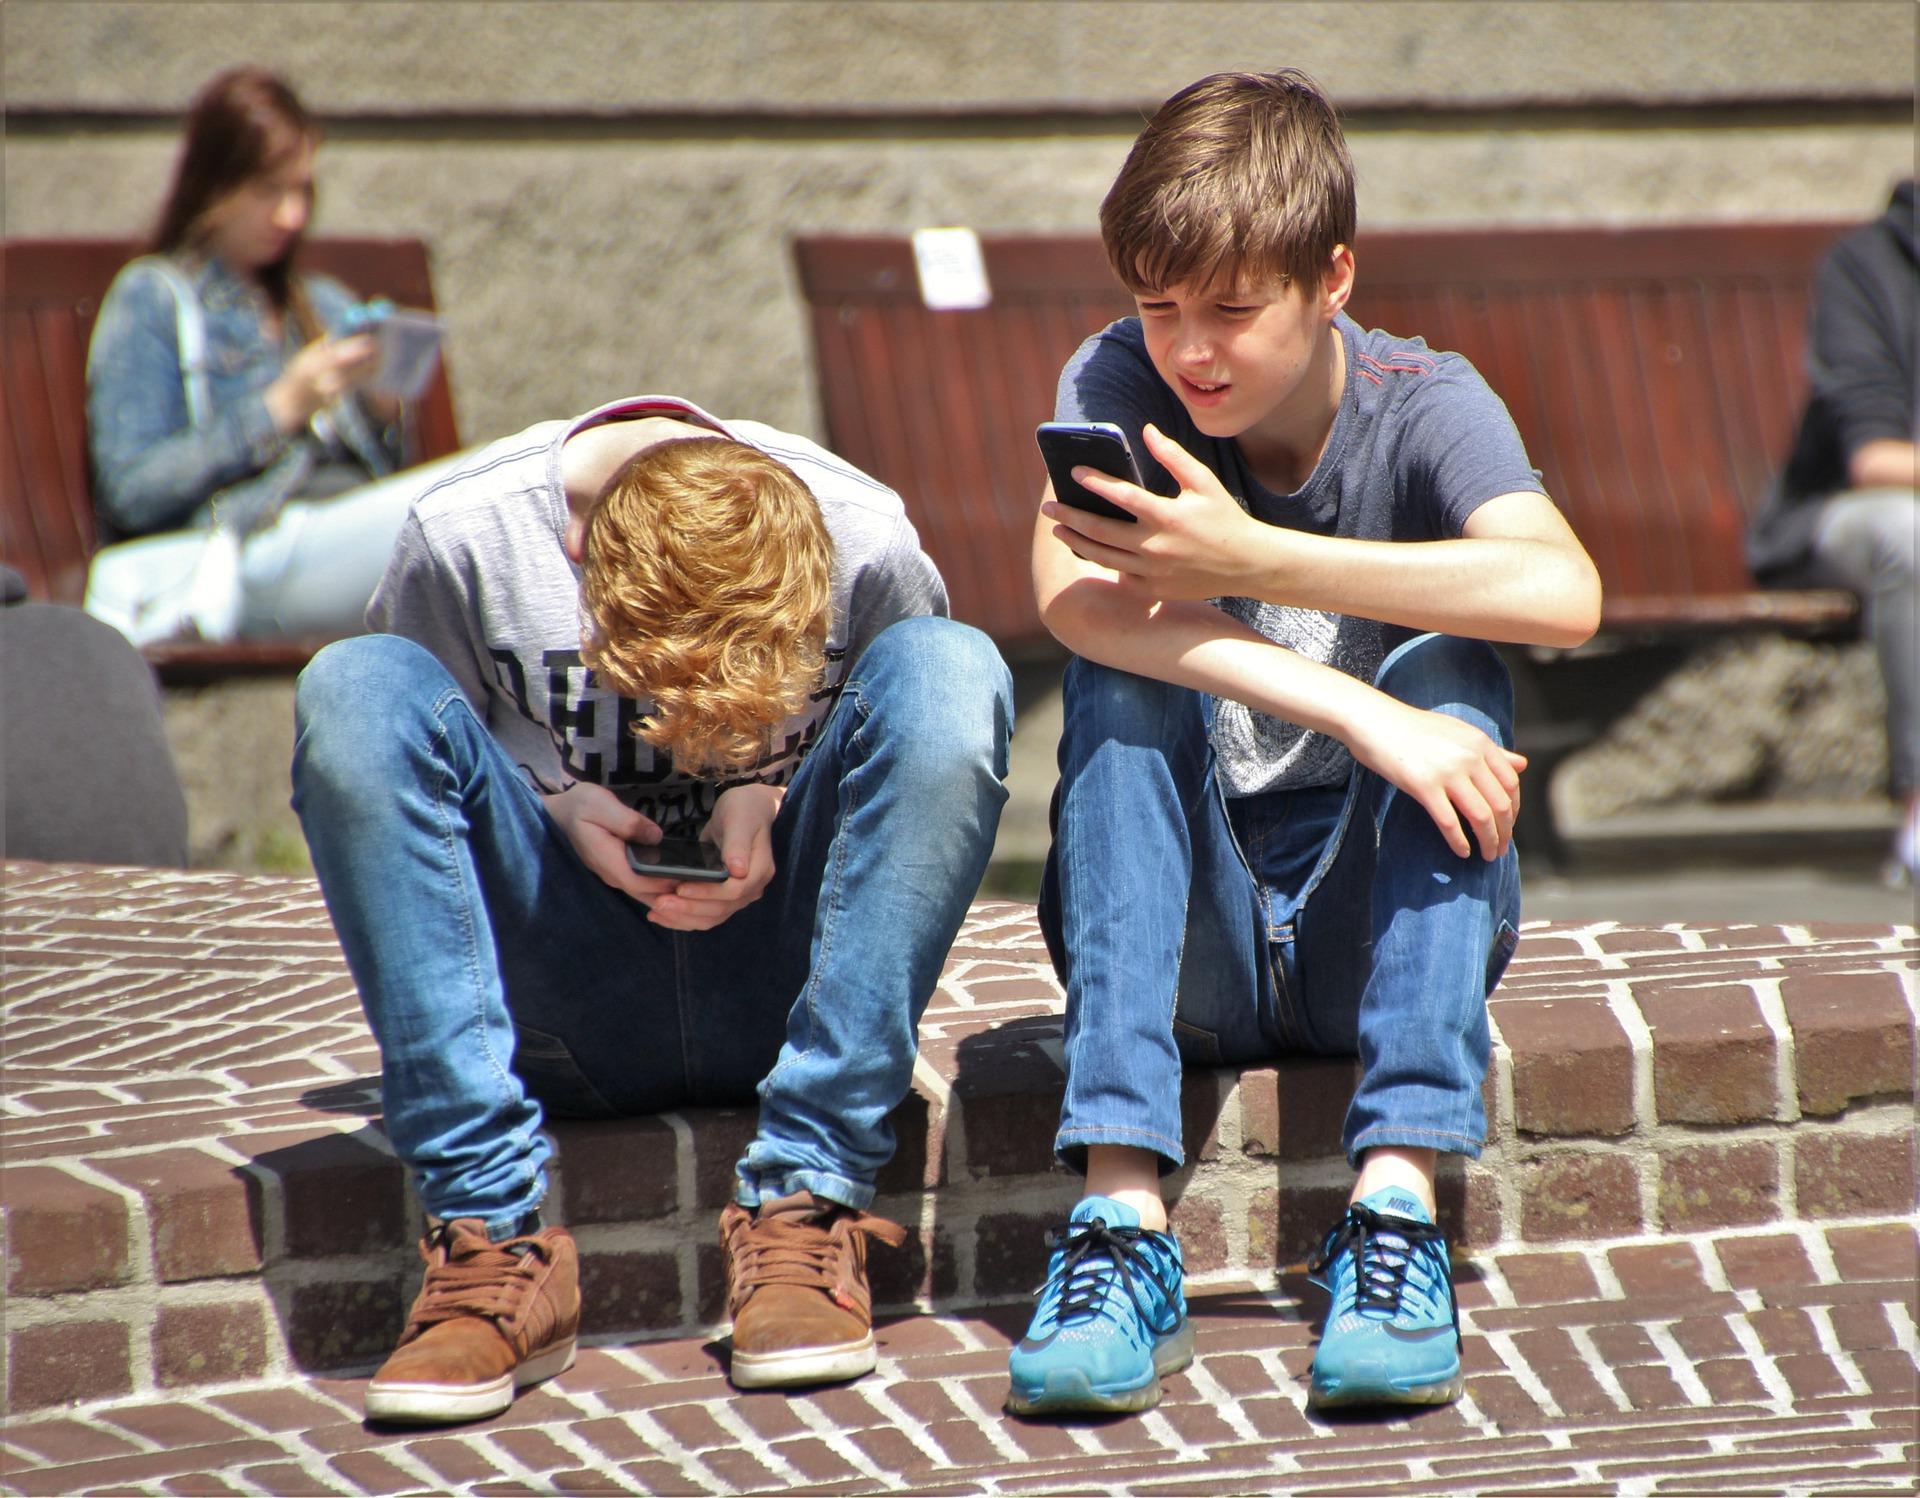 Nuoria istumassa rappusella kännyköiden kanssa.